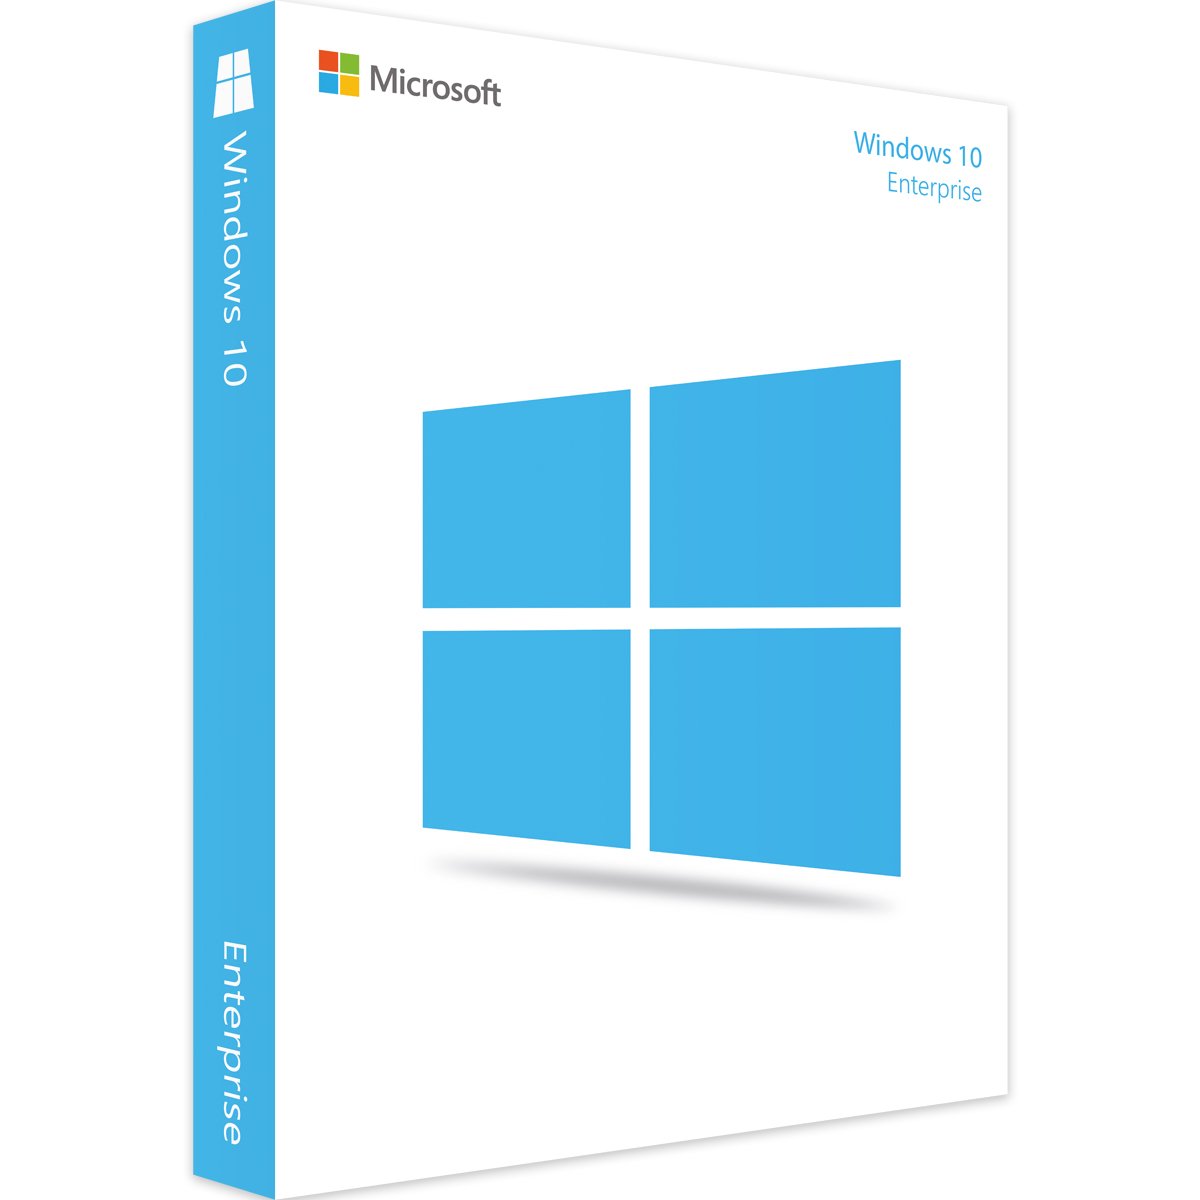 Windows 10 Enterprise - Produktschlüssel - Vollversion - Sofort-Download - 1 PC von Microsoft